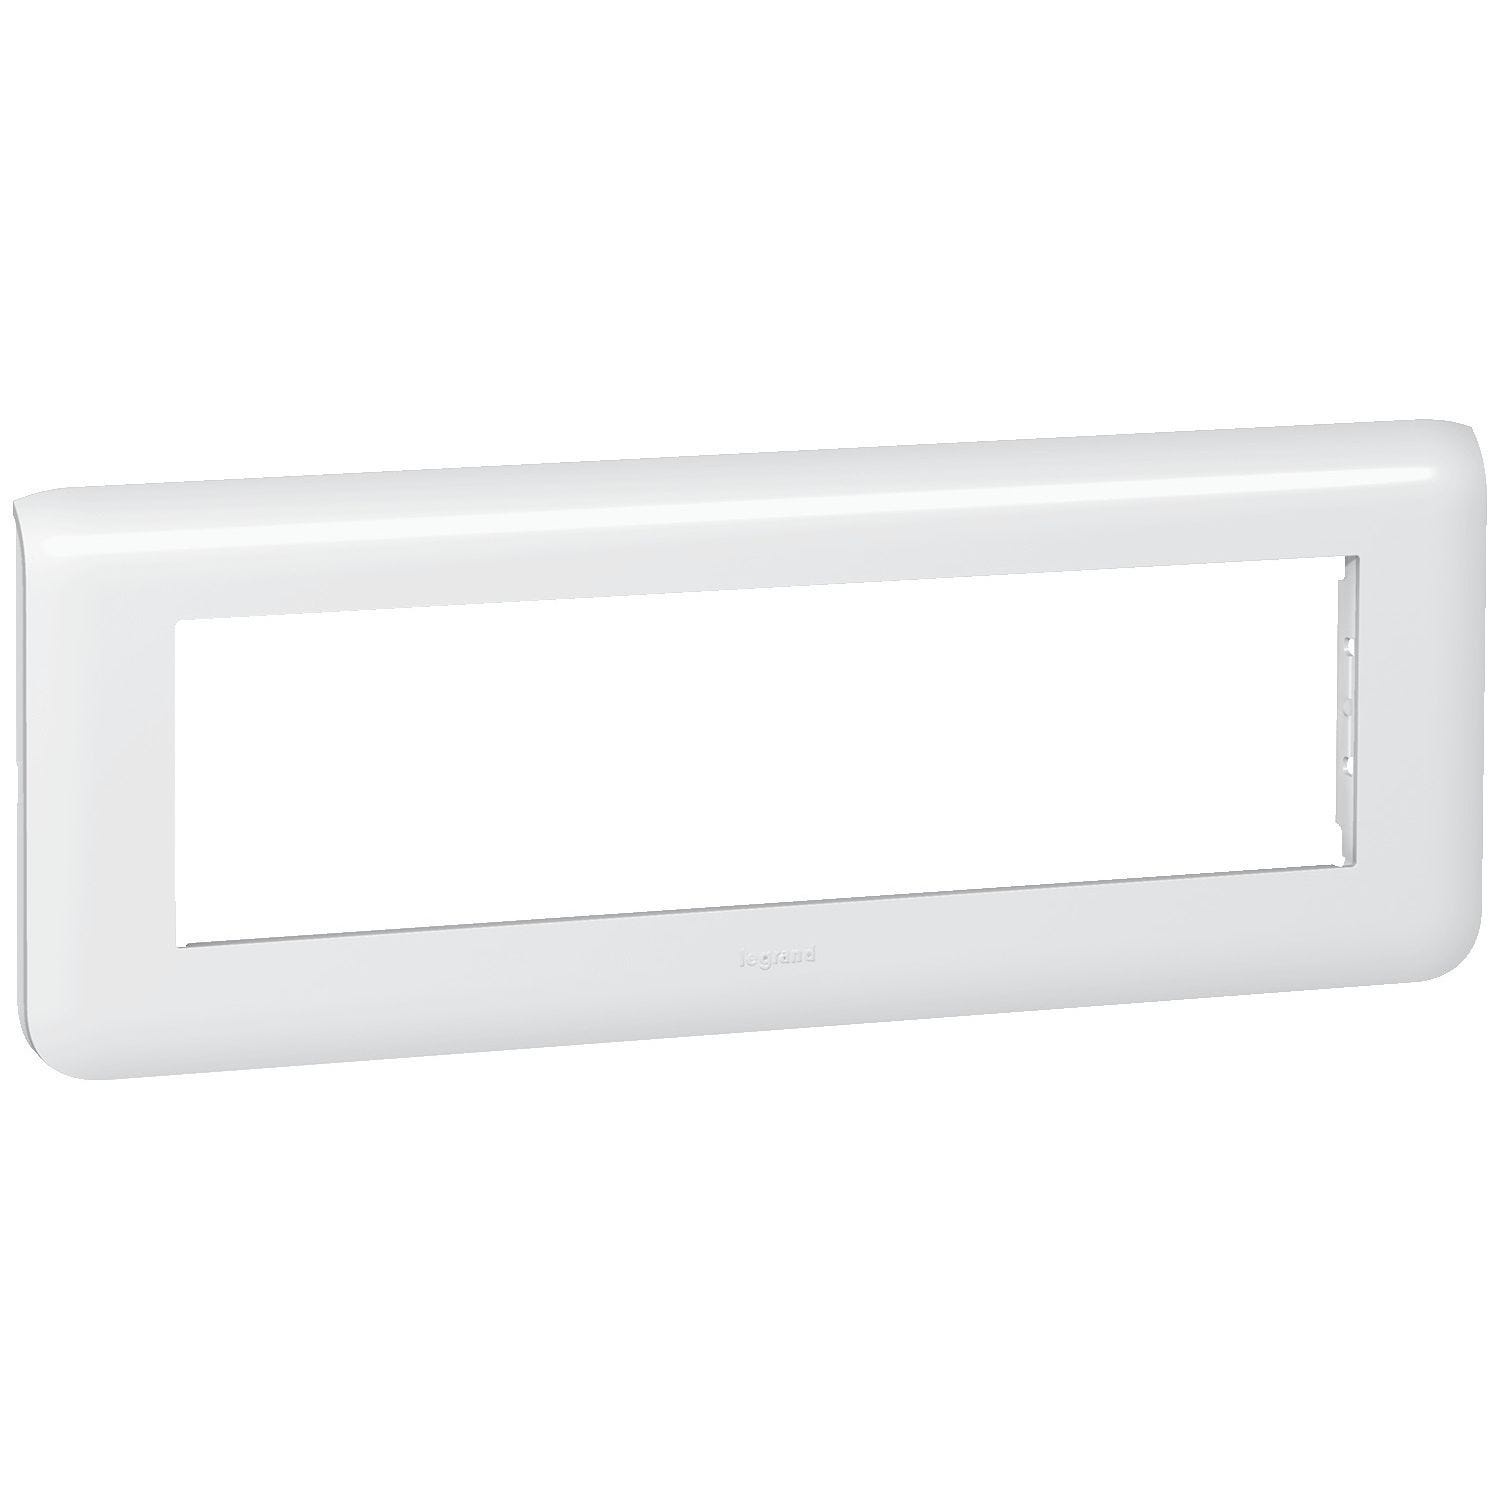 Plaque de finition Blanc MOSAIC horizontale blanc 8 modules - LEGRAND - 78818 0